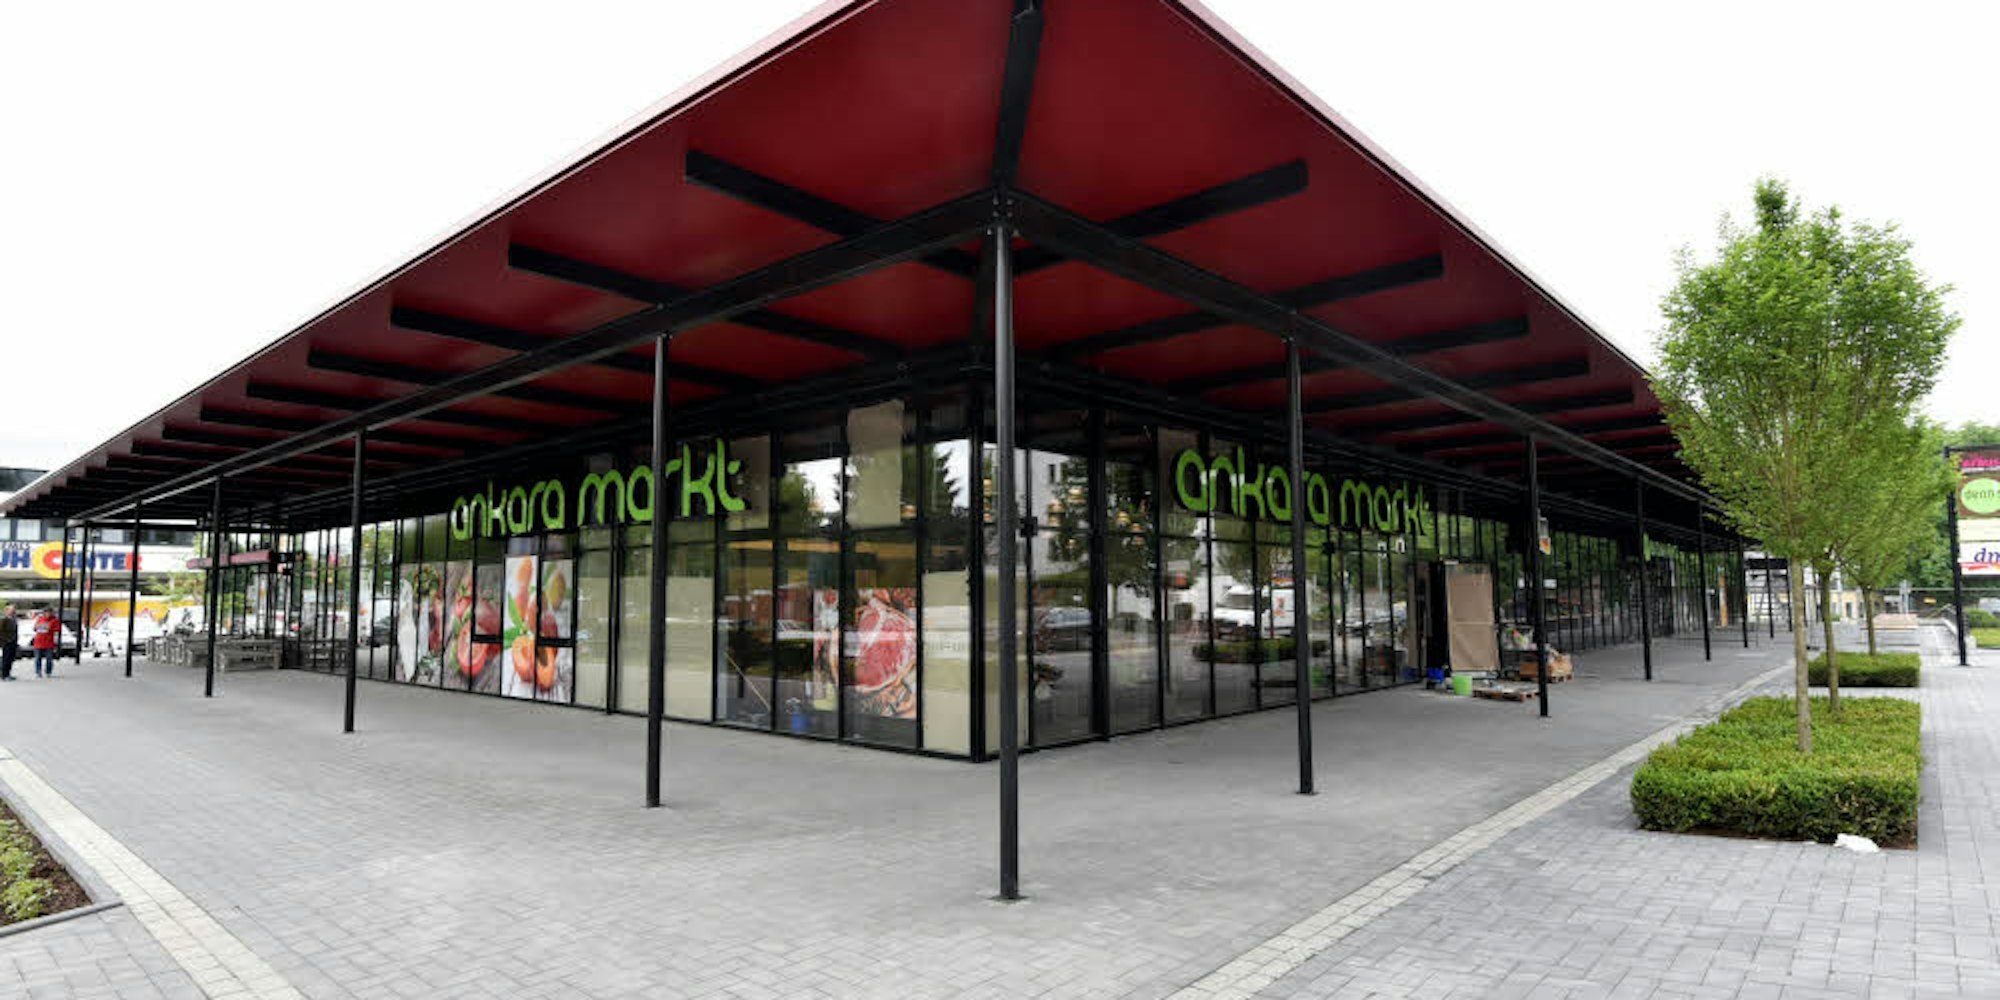 Der Platz an der Hauptstraße in Gronau hat ein neues repräsentatives Aussehen erhalten.